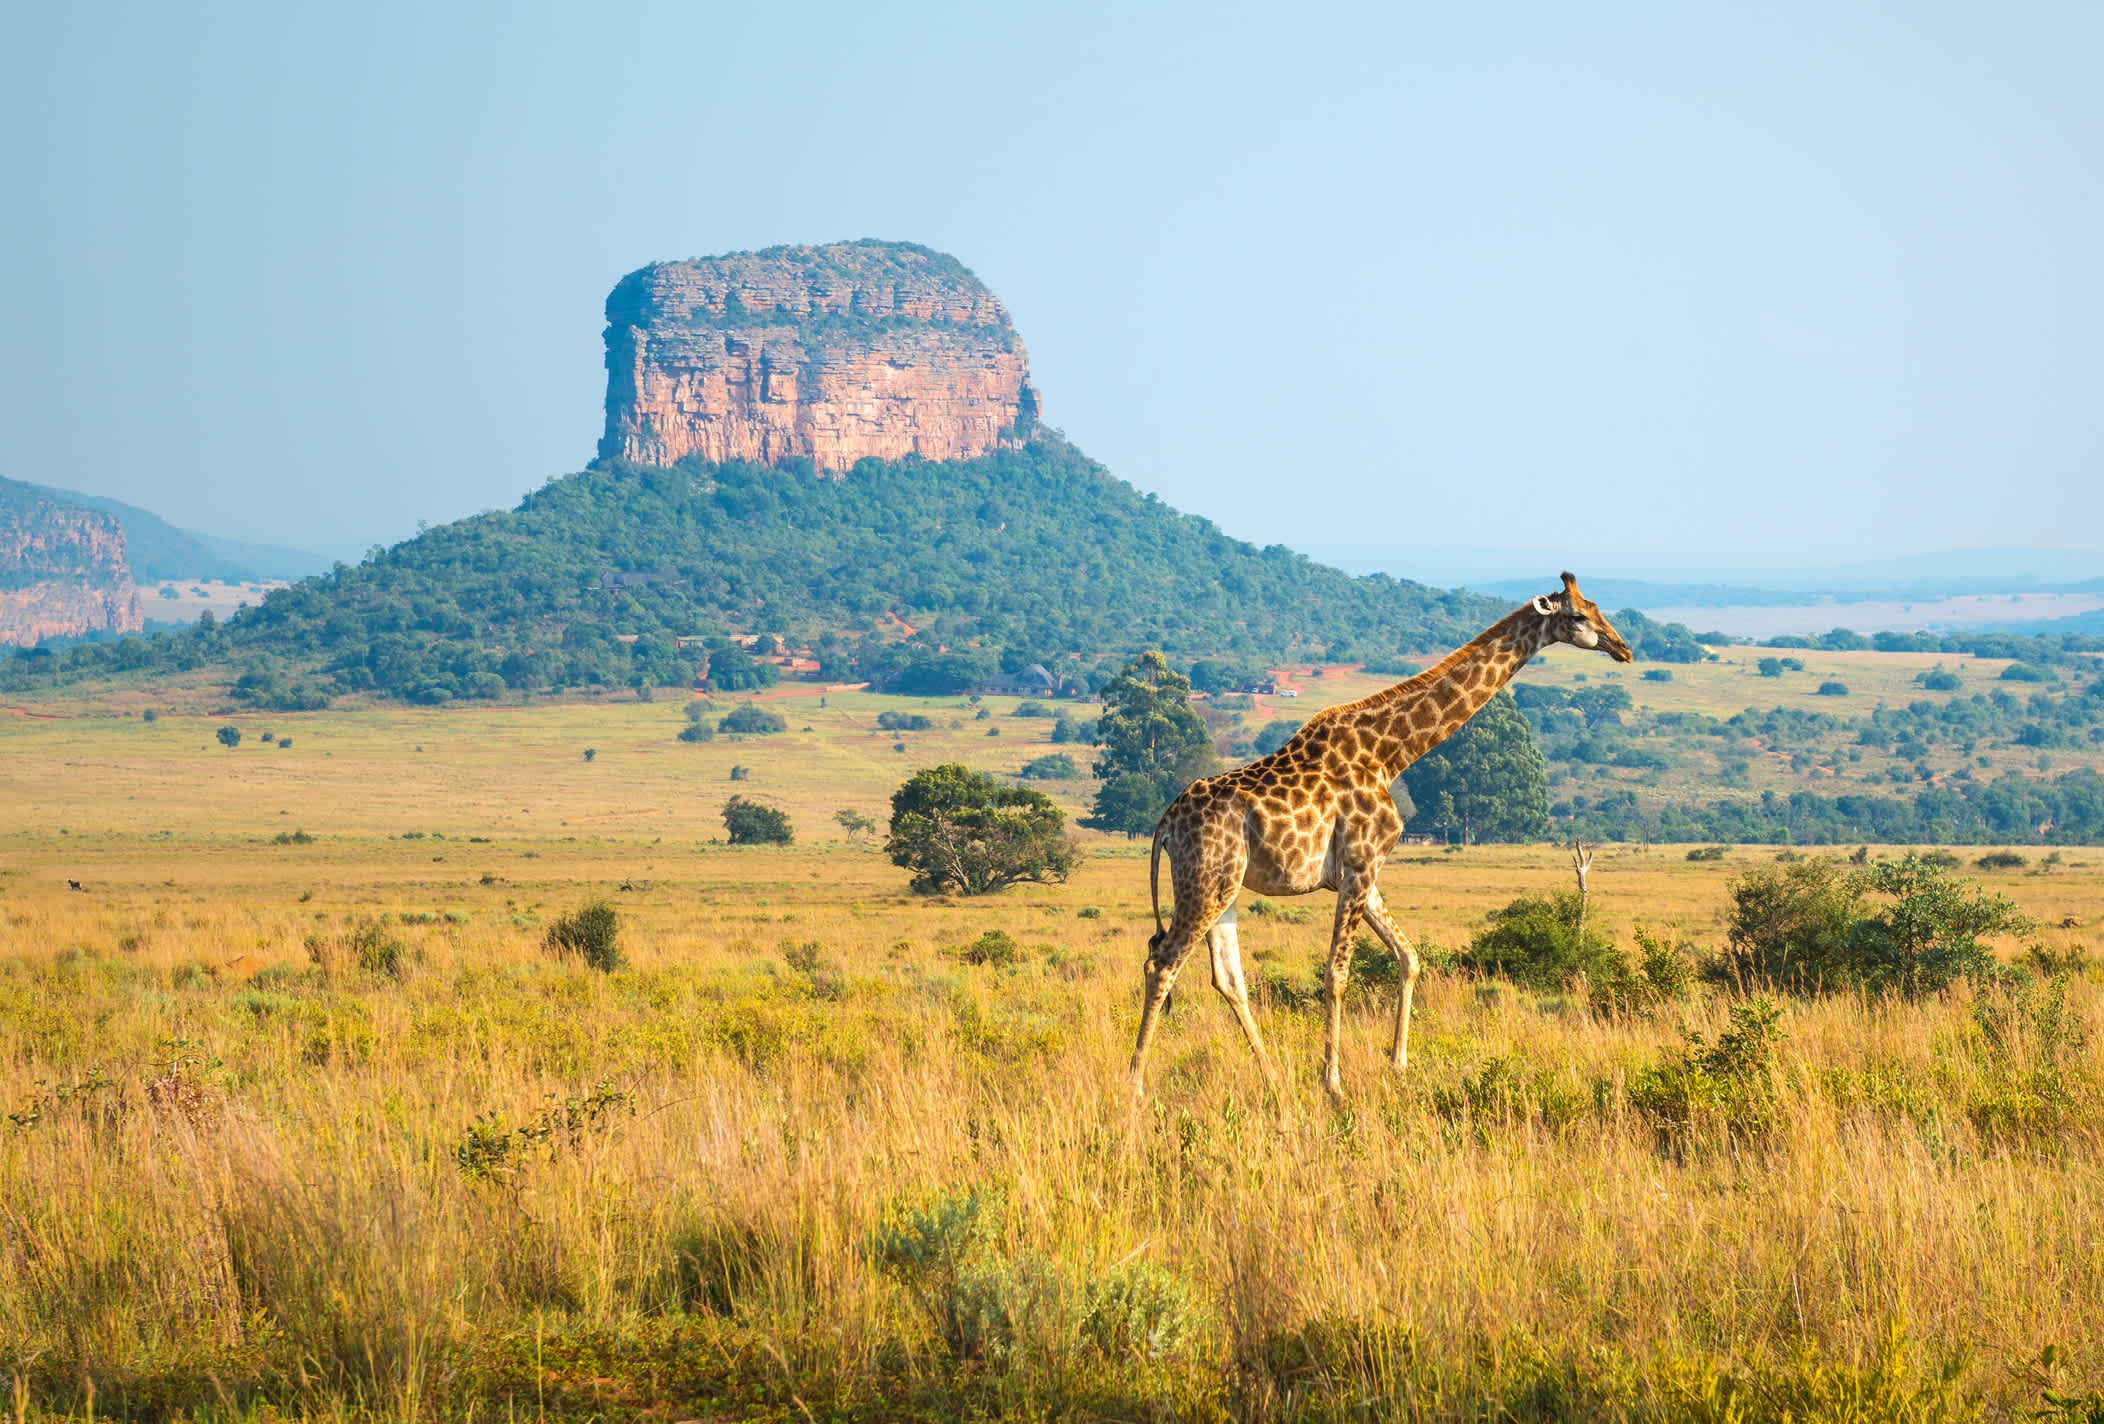 Eine Giraffe in der afrikanischen Savanne, Entabeni Safari Wildlife Reserve in Südafrika.